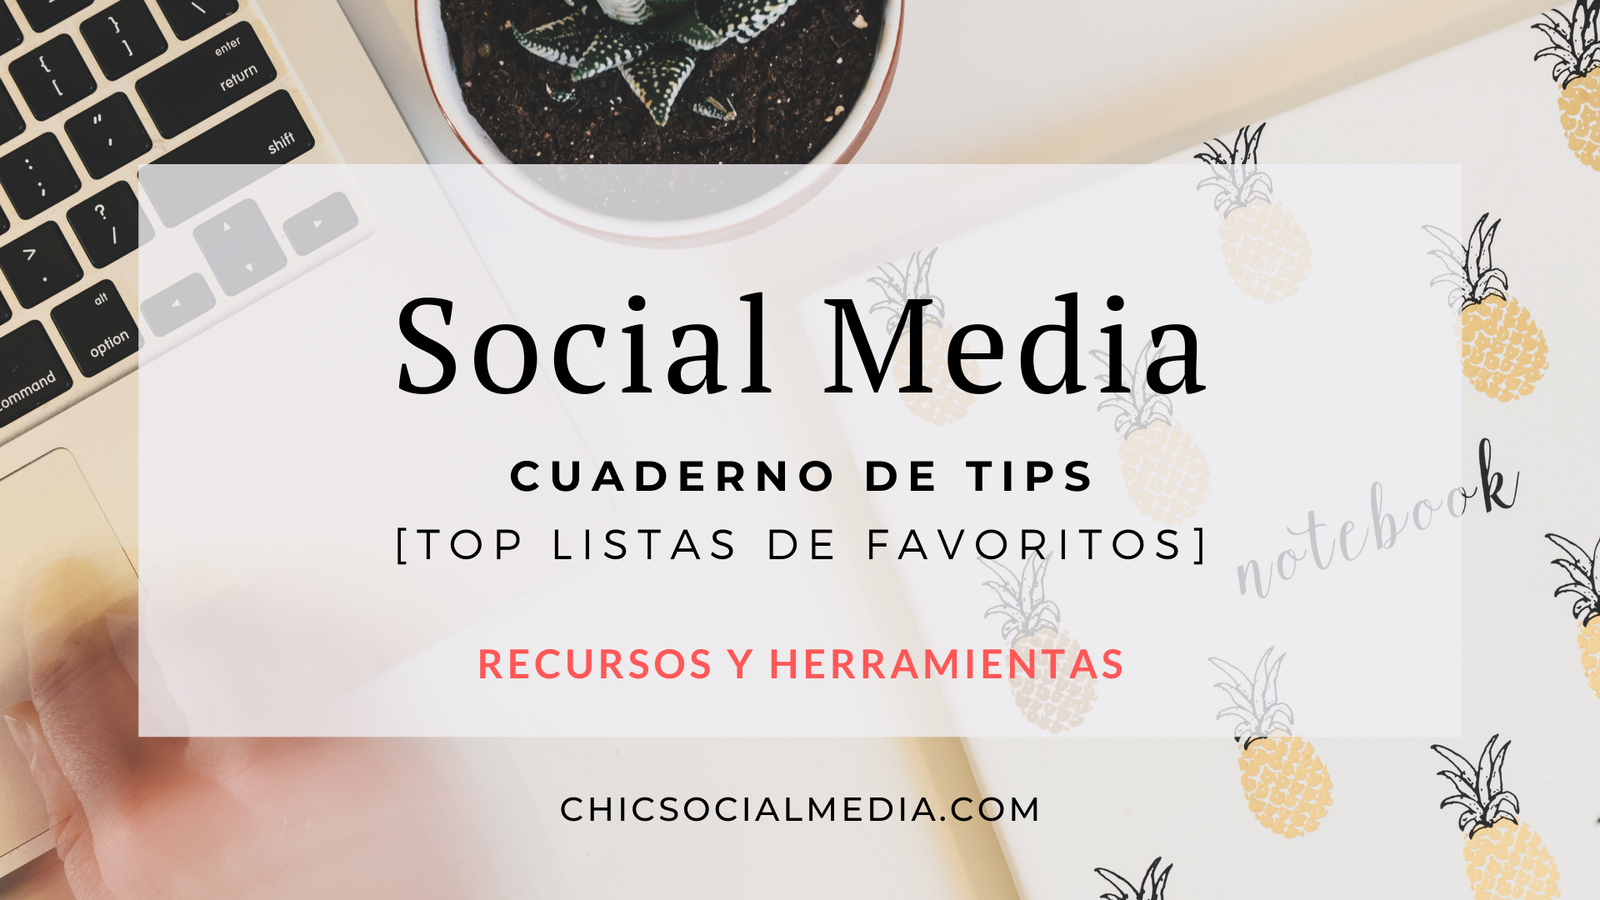 Chic Social Media Blog: Cuaderno de Tips